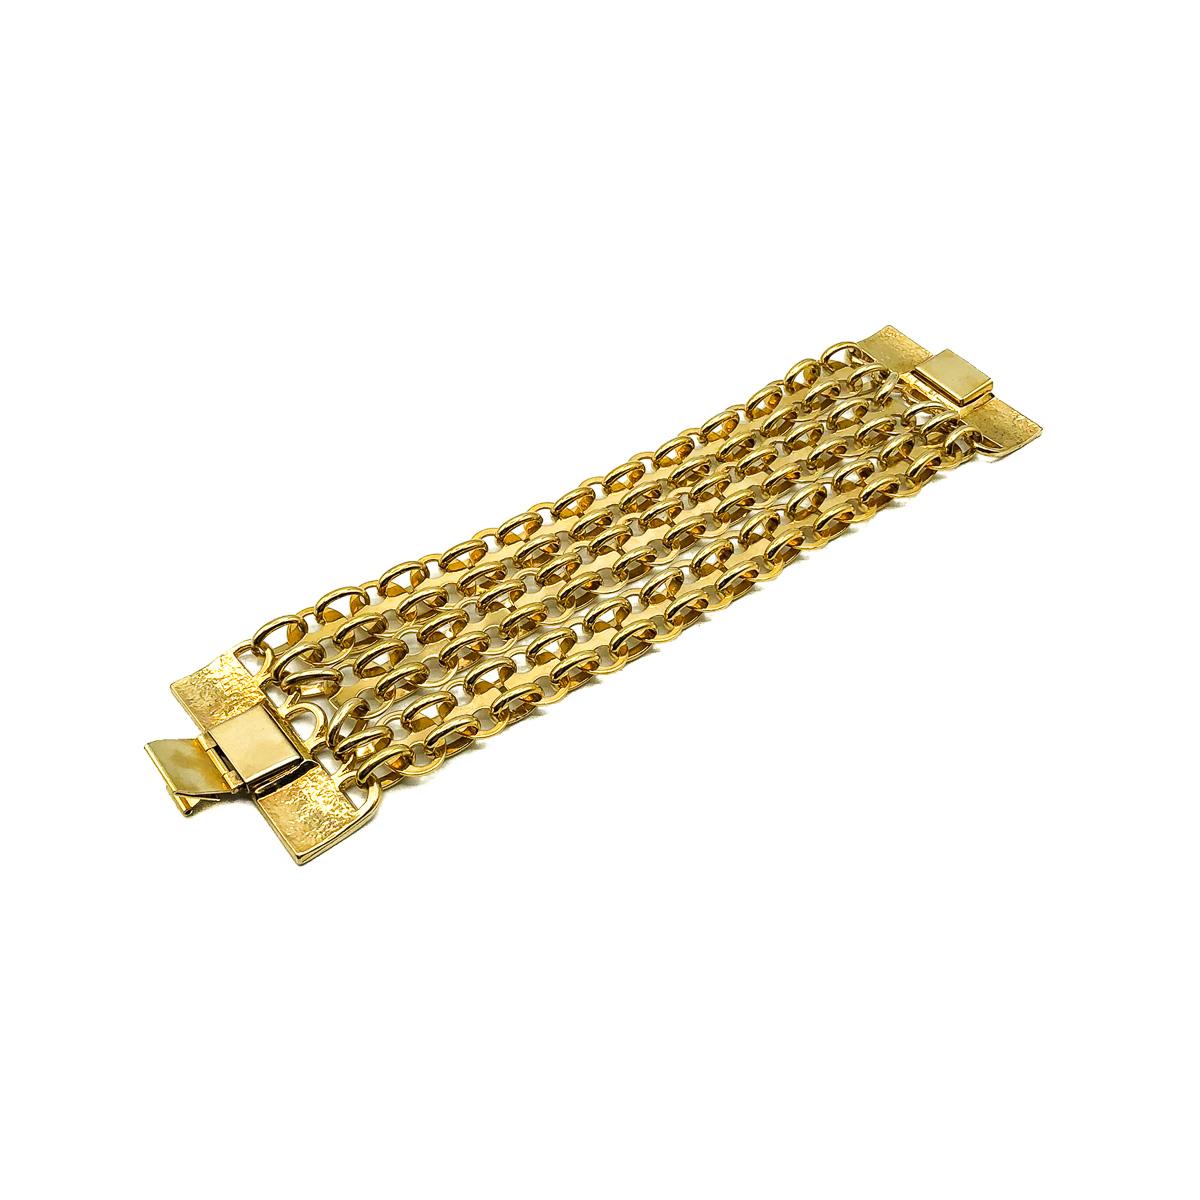 Un bracelet Vintage Paco Rabanne avec le style sculptural métallique audacieux qui est maintenant si emblématique de cette maison de mode parisienne à la pointe de la technologie. Il se compose de trois chaînes ornées en forme de cotte de mailles